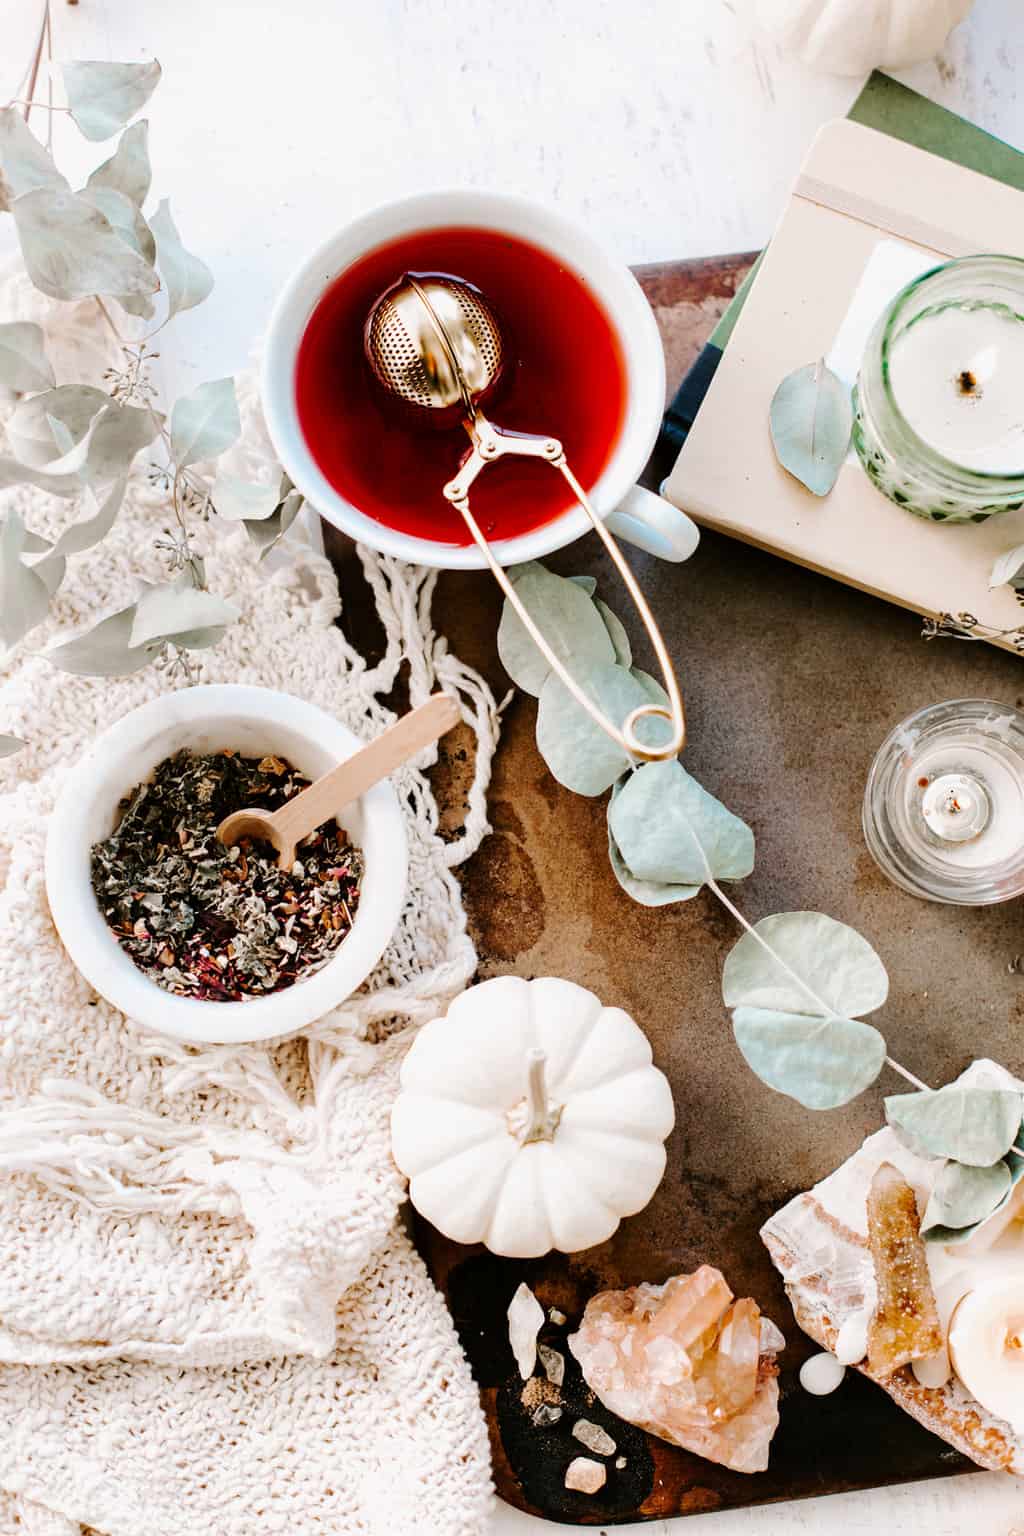 Hibiscus Skin Benefits and Tea Recipe